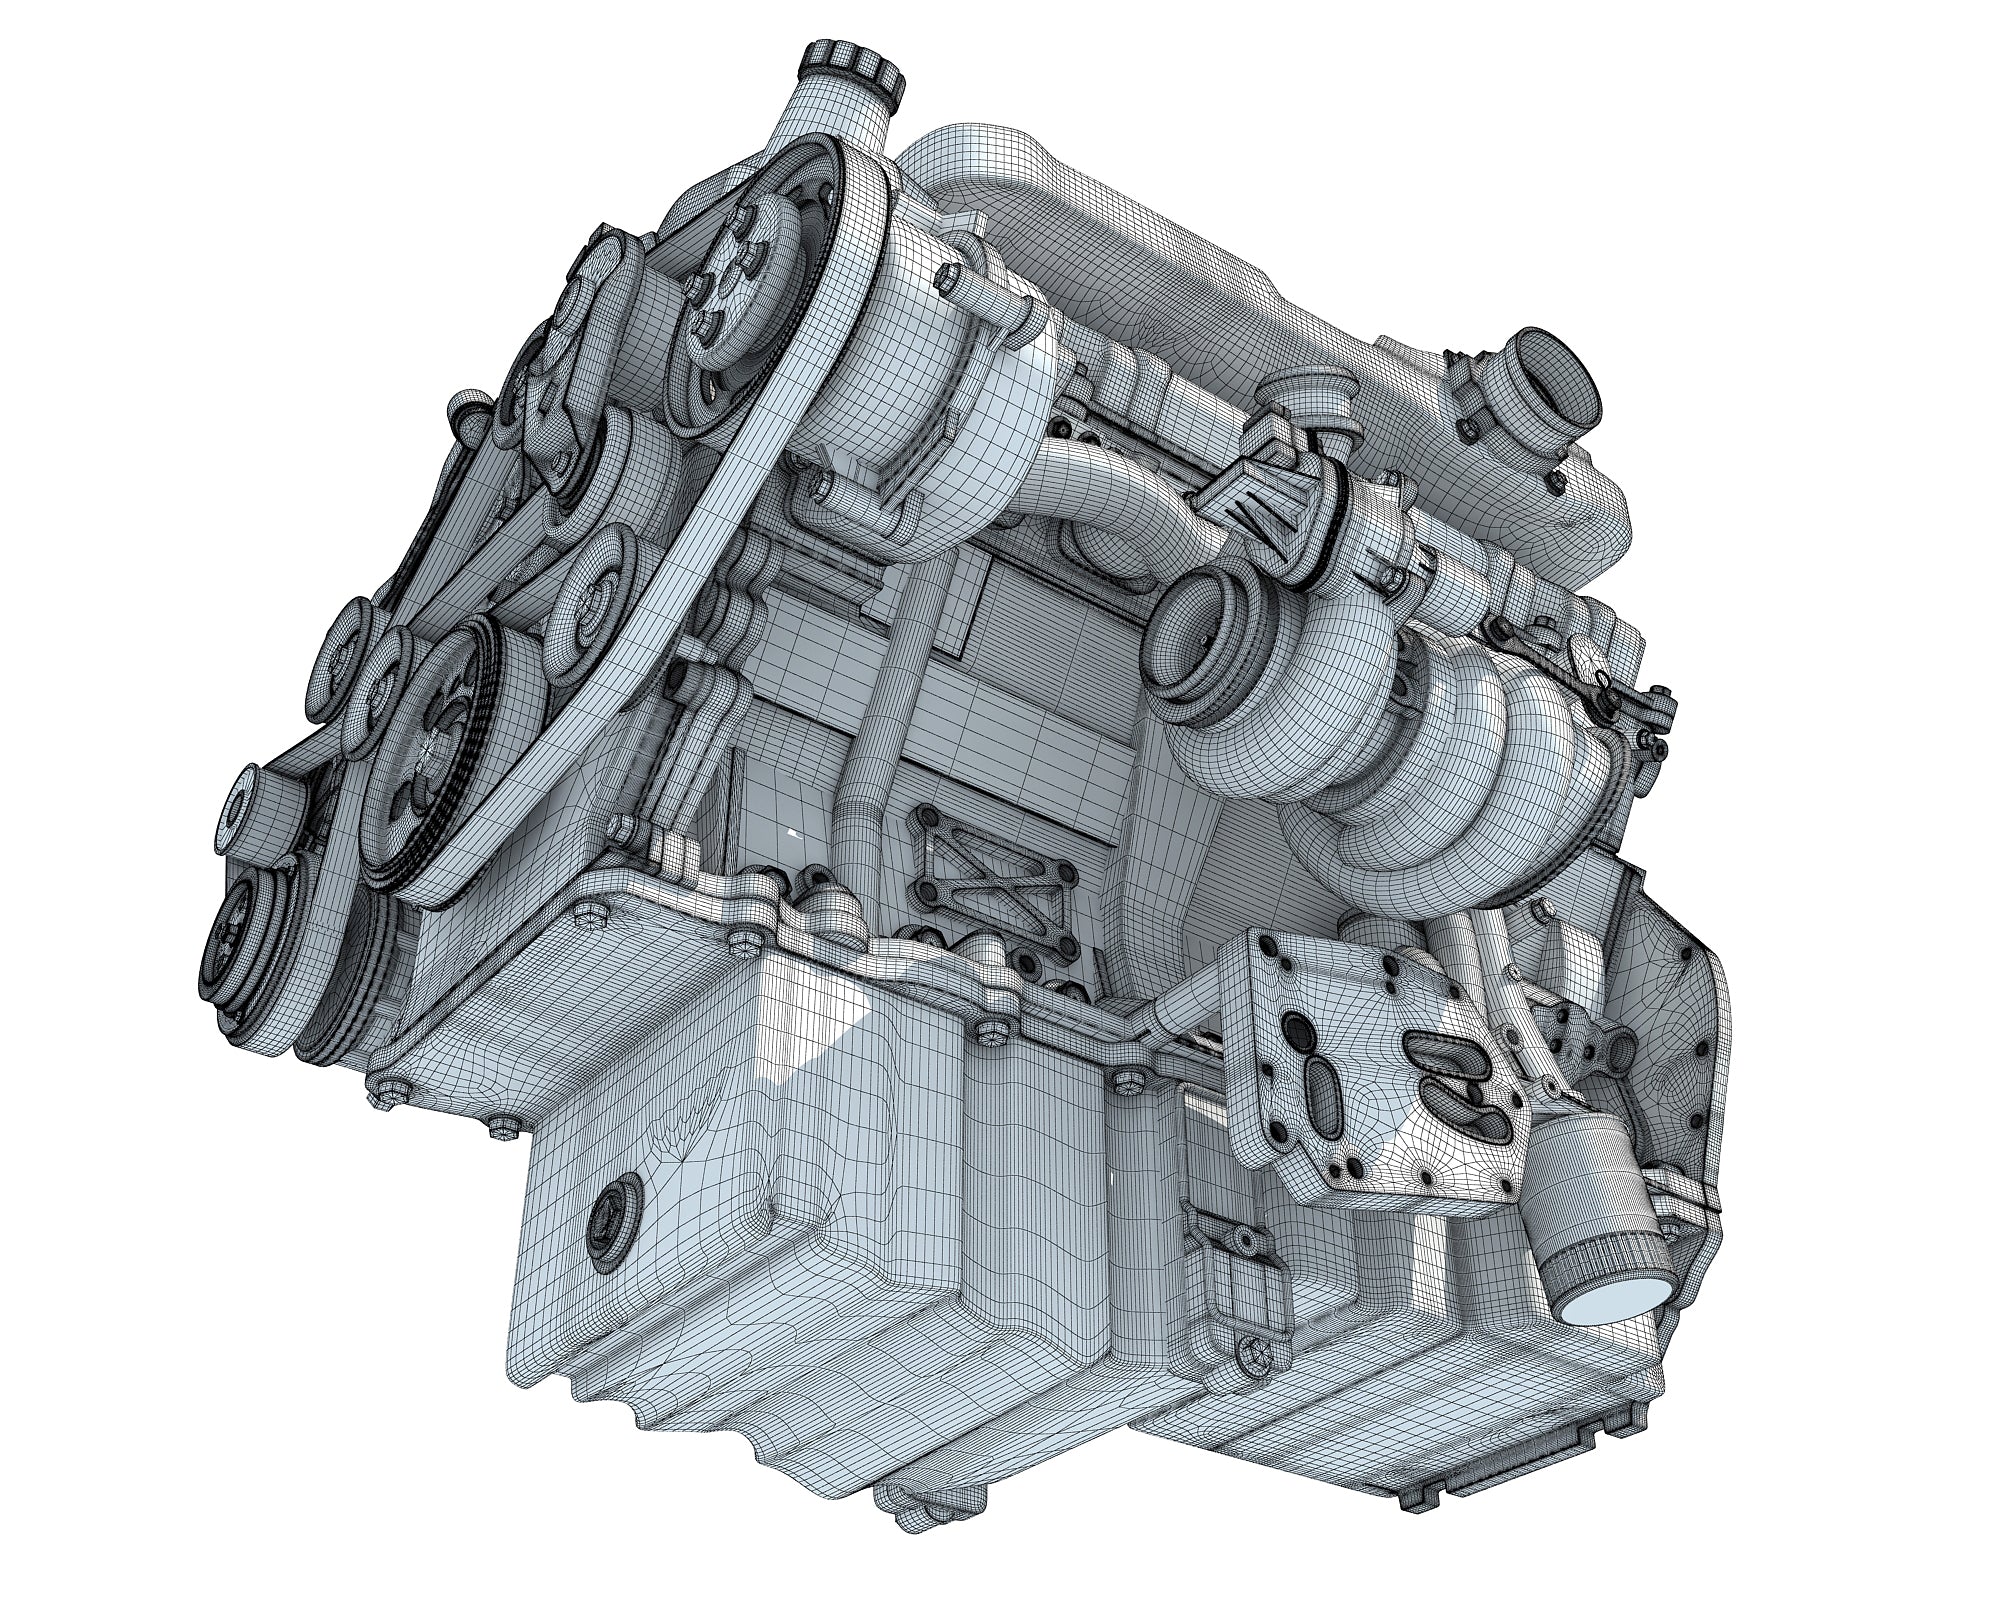 Animation V12 Engine 3D Models